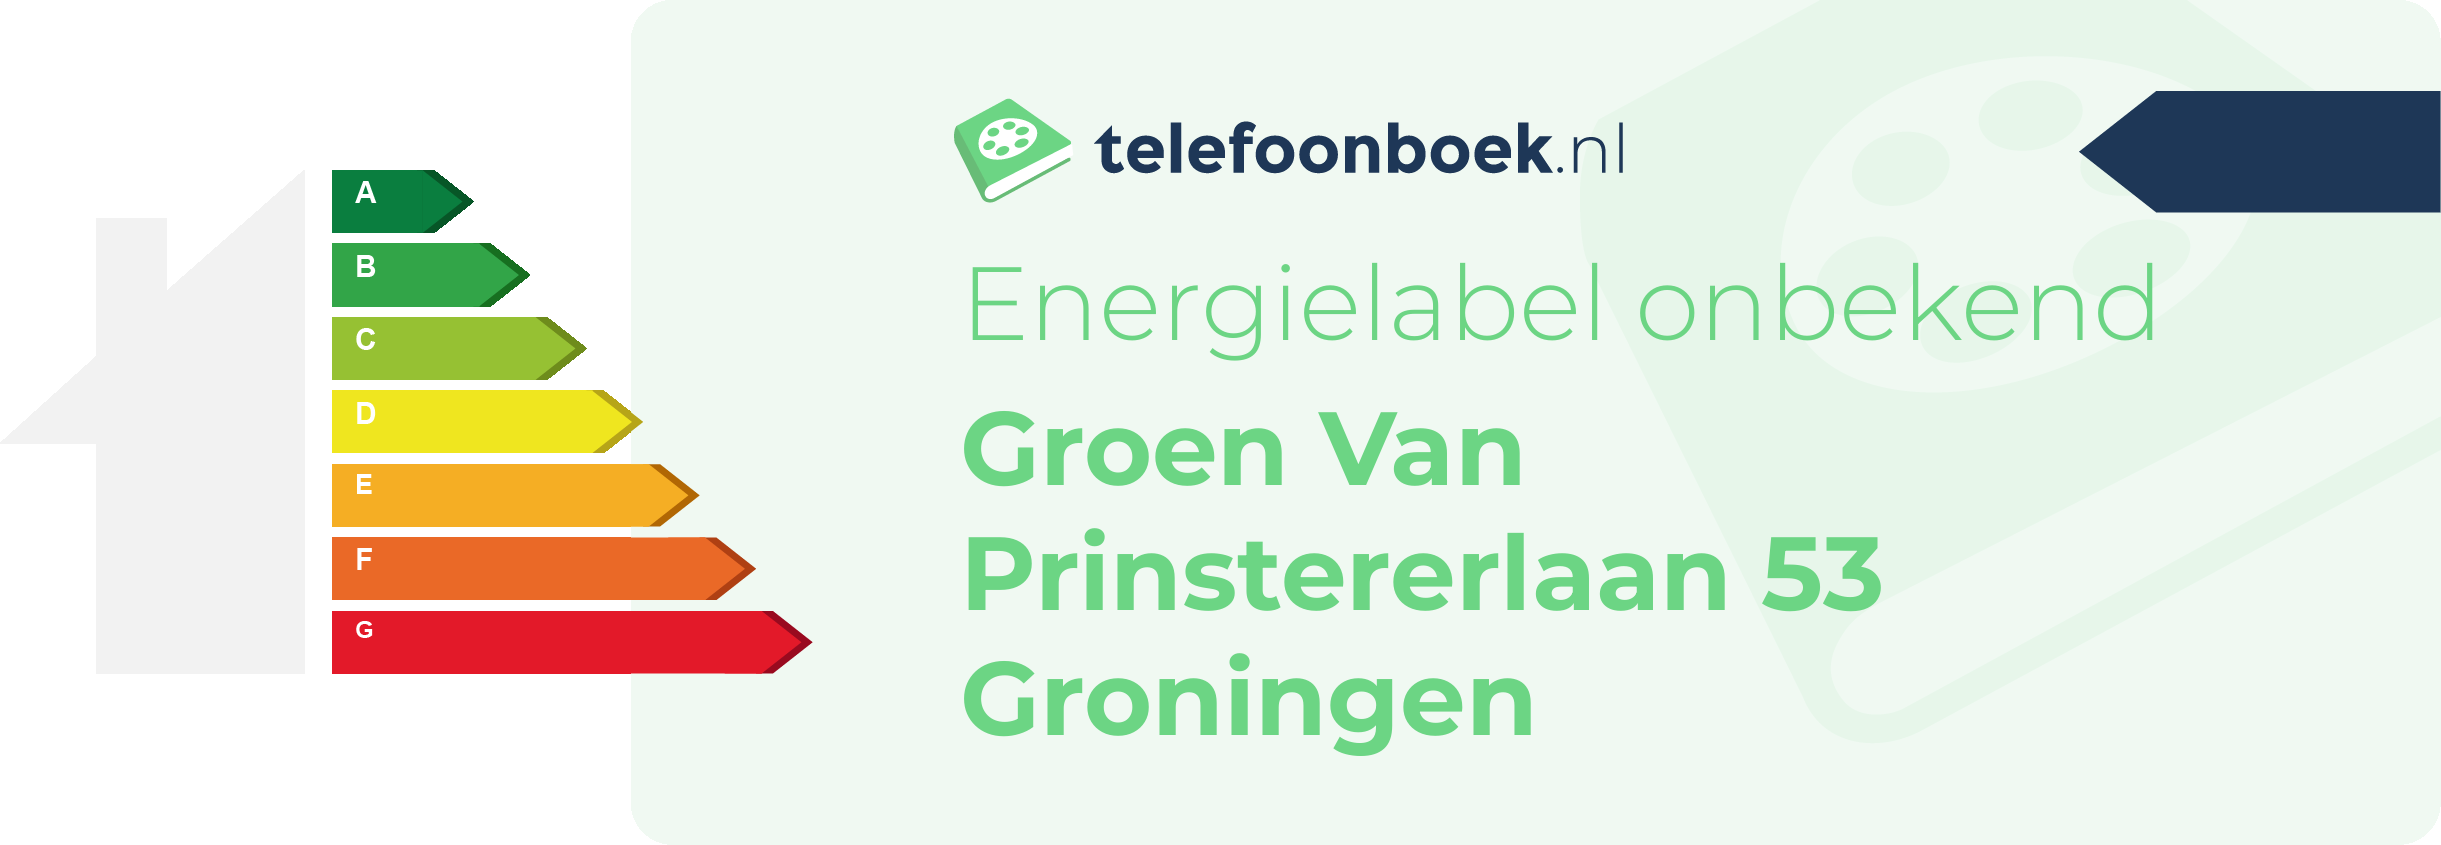 Energielabel Groen Van Prinstererlaan 53 Groningen